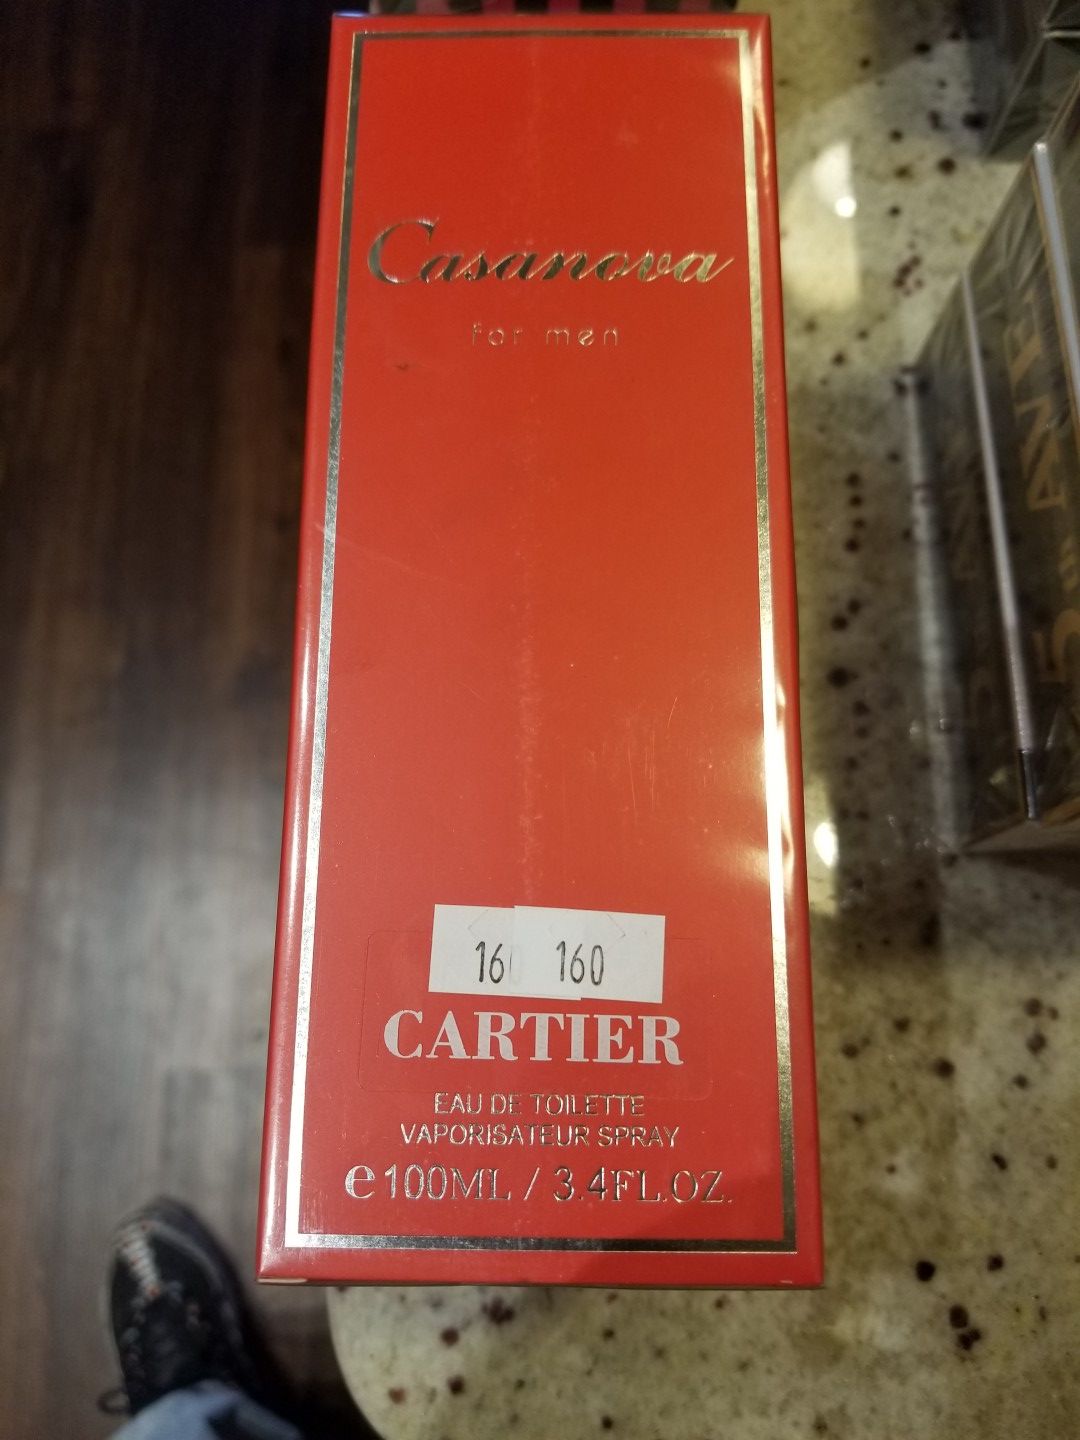 Cartier Casanova for men